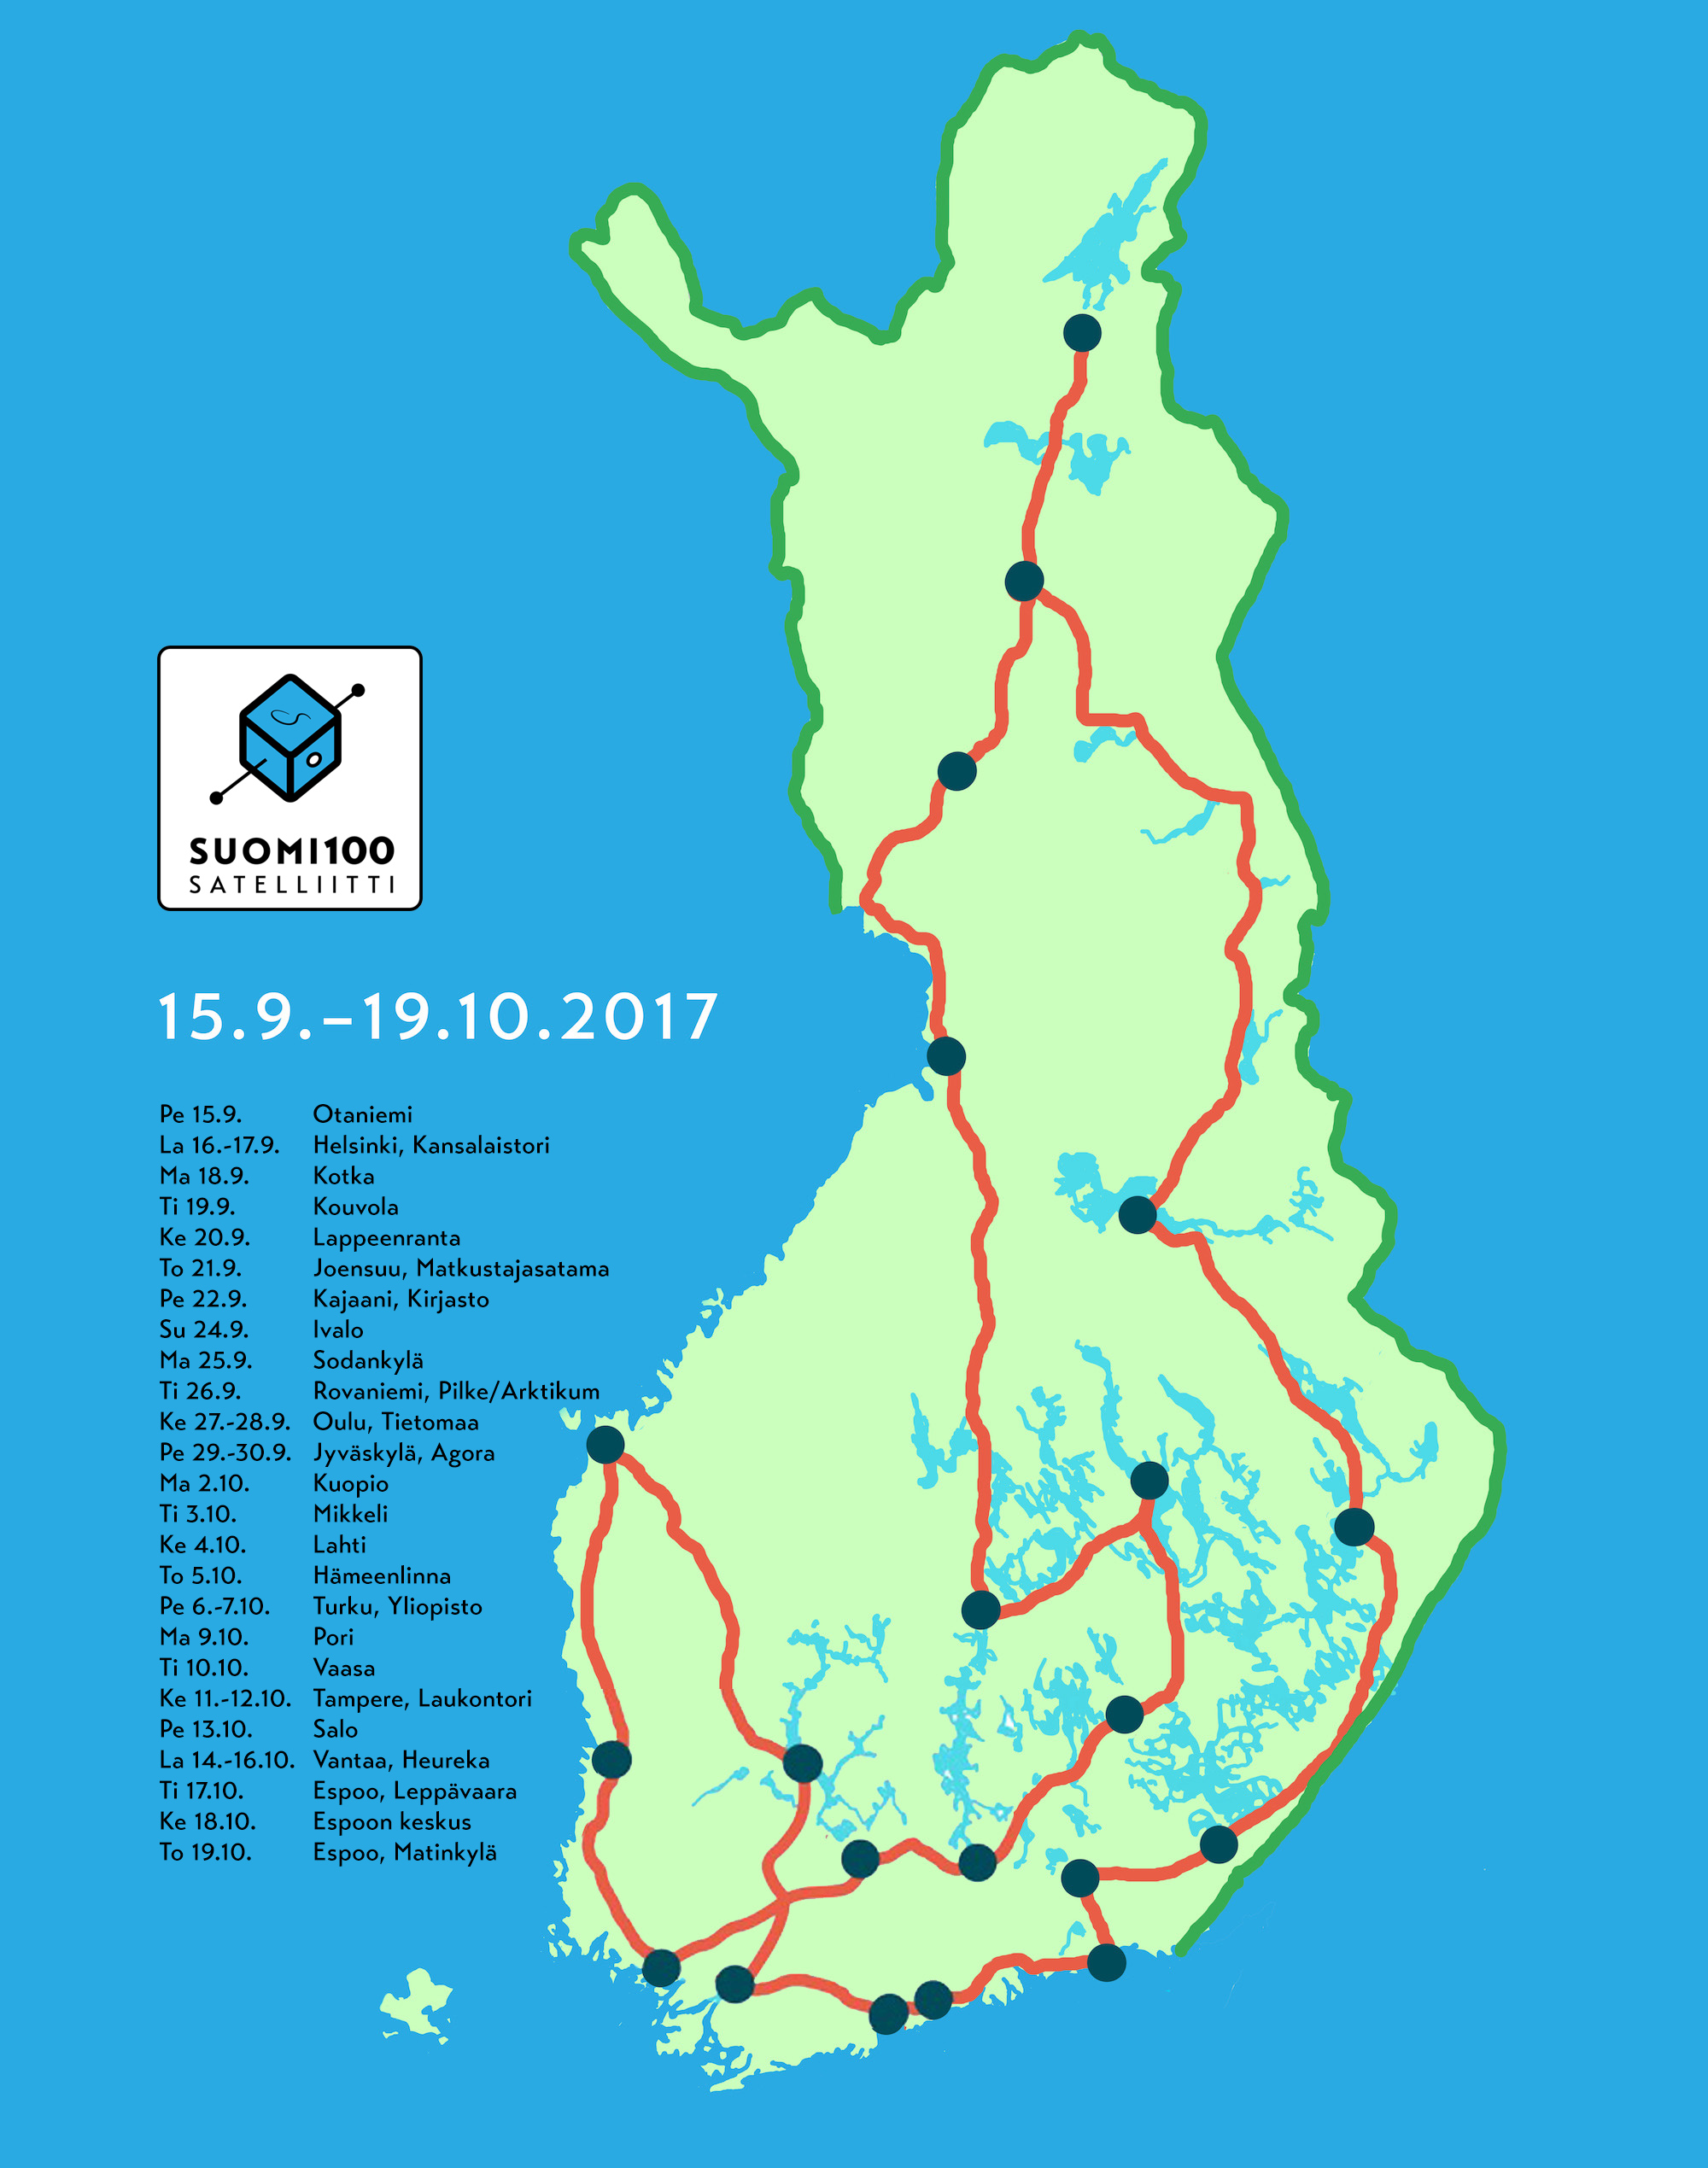 Avaruusrekan reitti ympäri Suomen